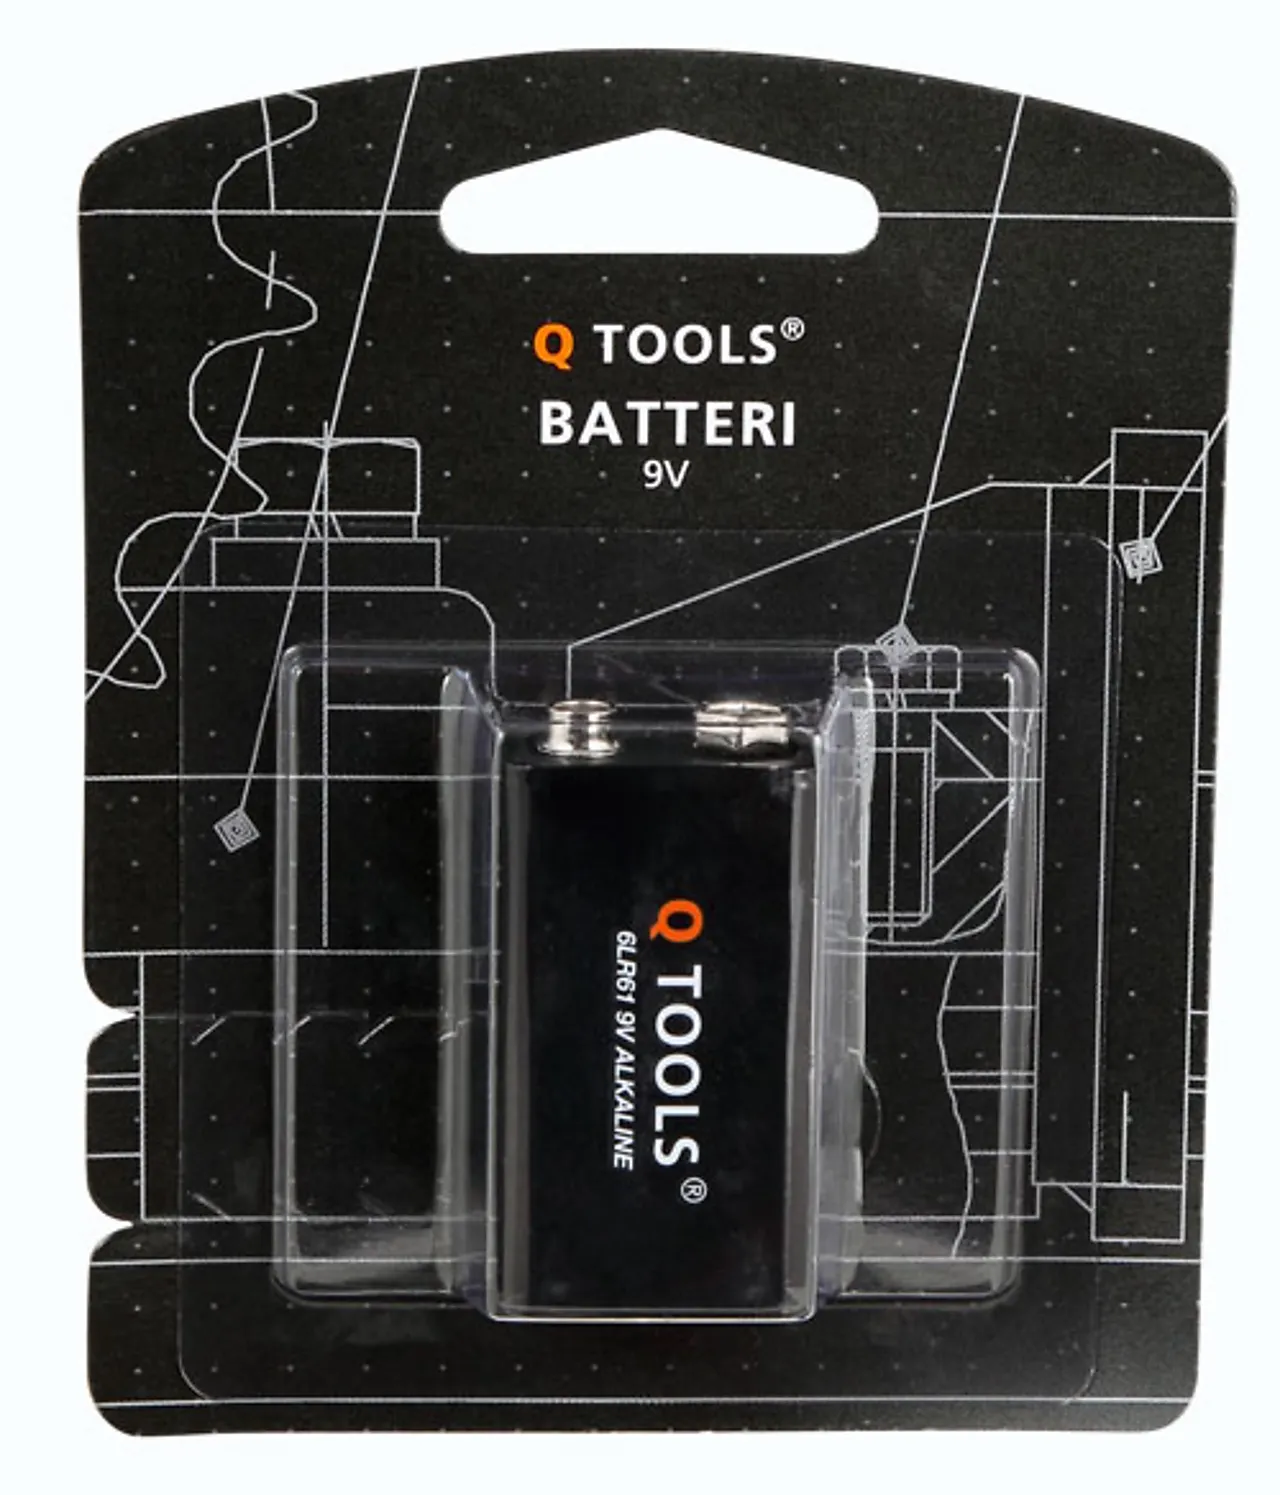 Q-tools batteri 9 volt